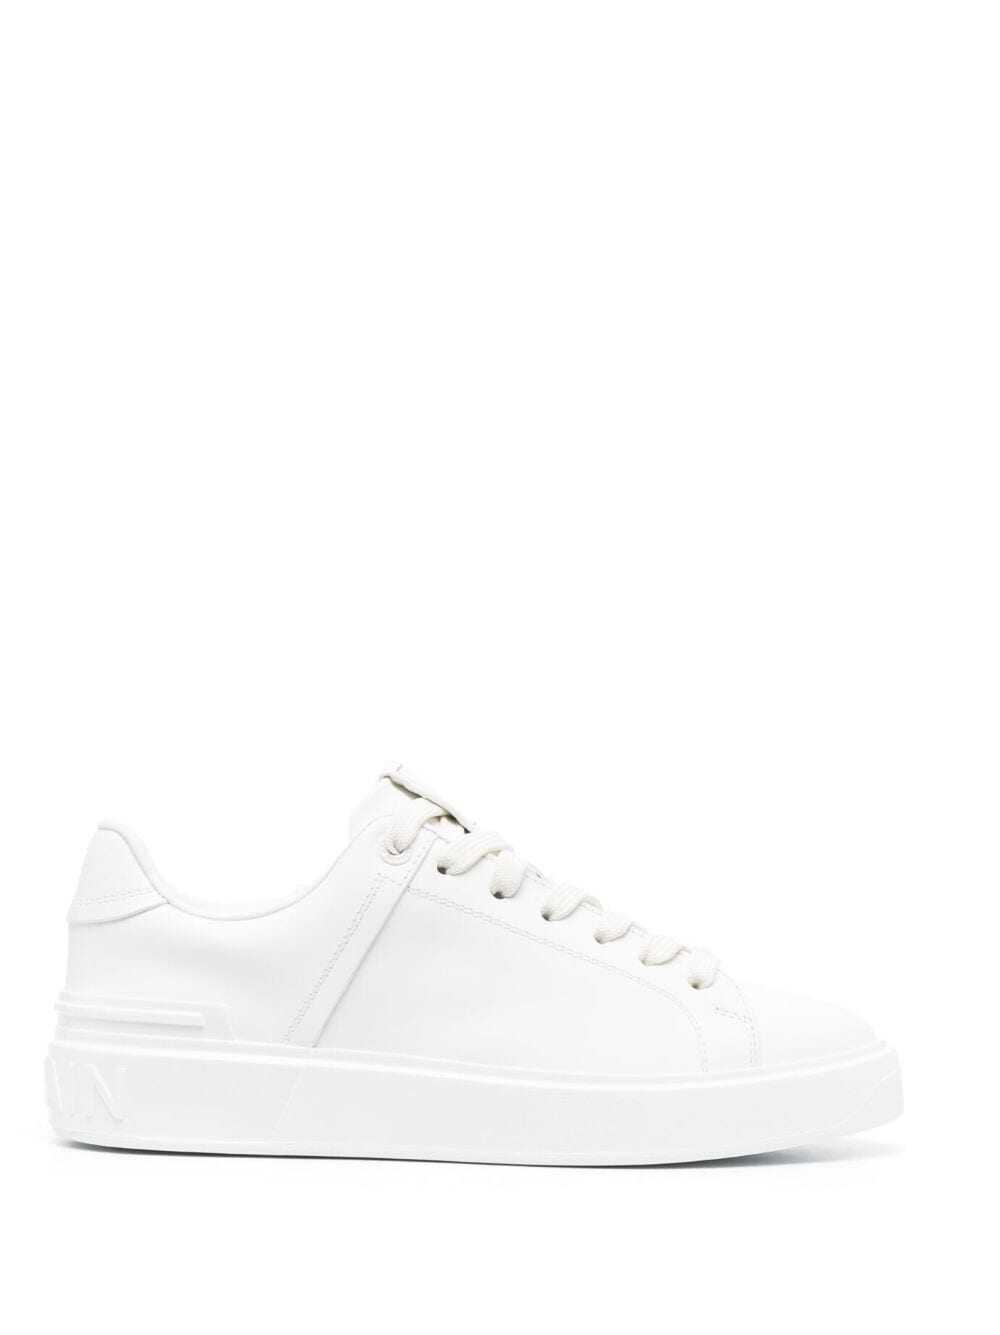 Balmain Sneakers White White image12